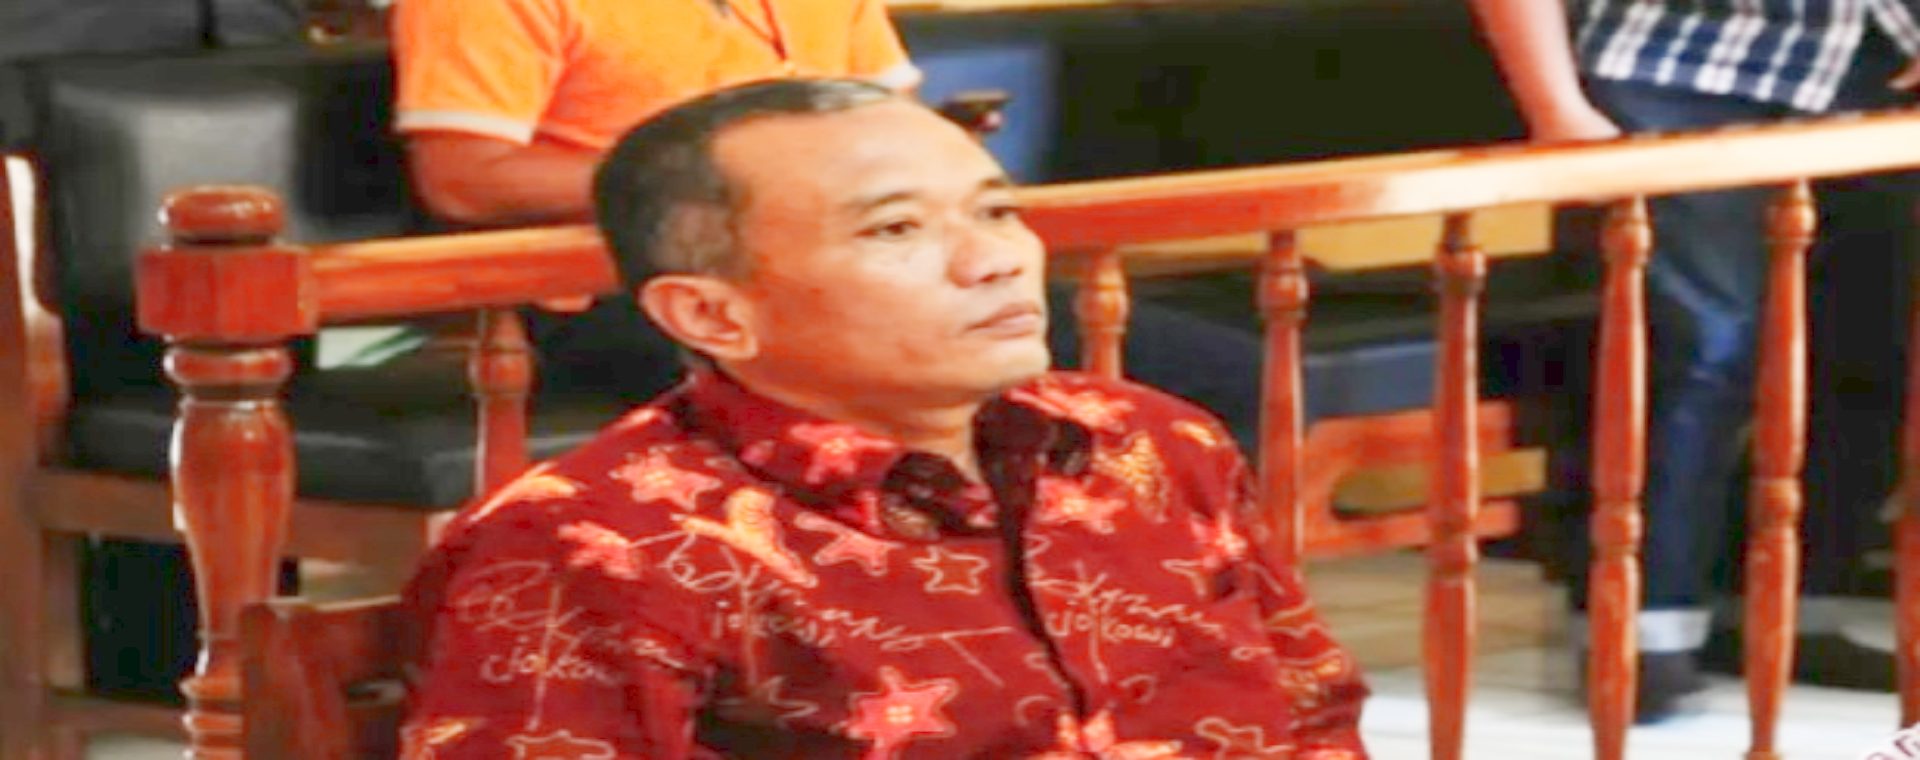 Arsip - Terdakwa kasus penulis buku Jokowi Undercover Bambang Tri Mulyono, menjalani sidang perdana di Pengadilan Negeri Blora, Jawa Tengah, Senin (20/3 - 2017). Sidang tersebut mengagendakan pembacaan dakwaan dari Jaksa Penuntut Umum (JPU).